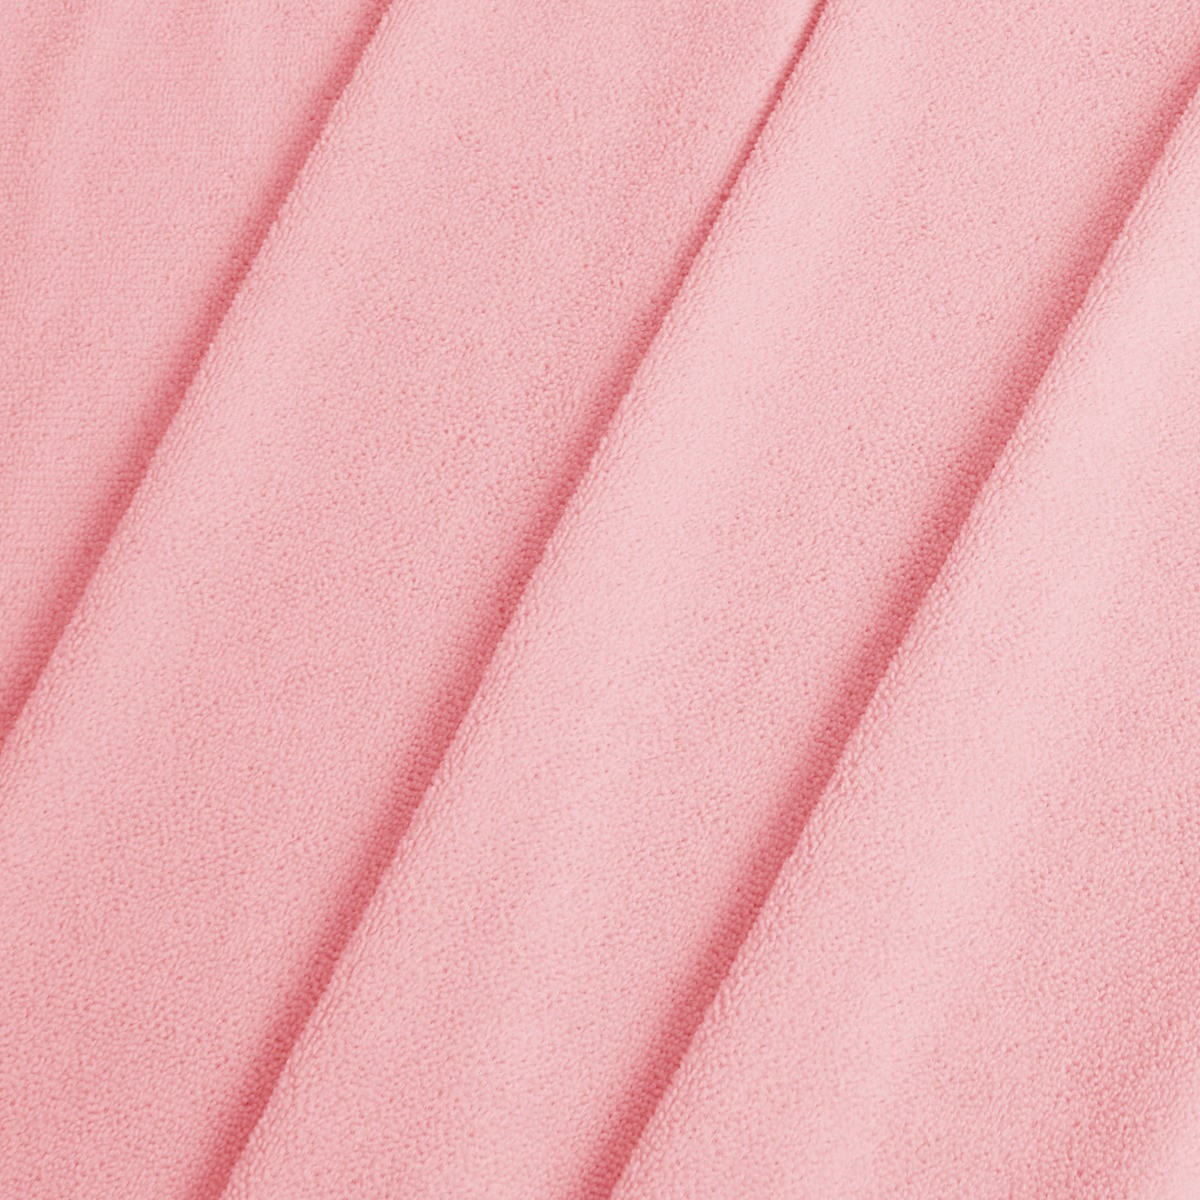 Brentfords Beach Towel - Dusky Pink>